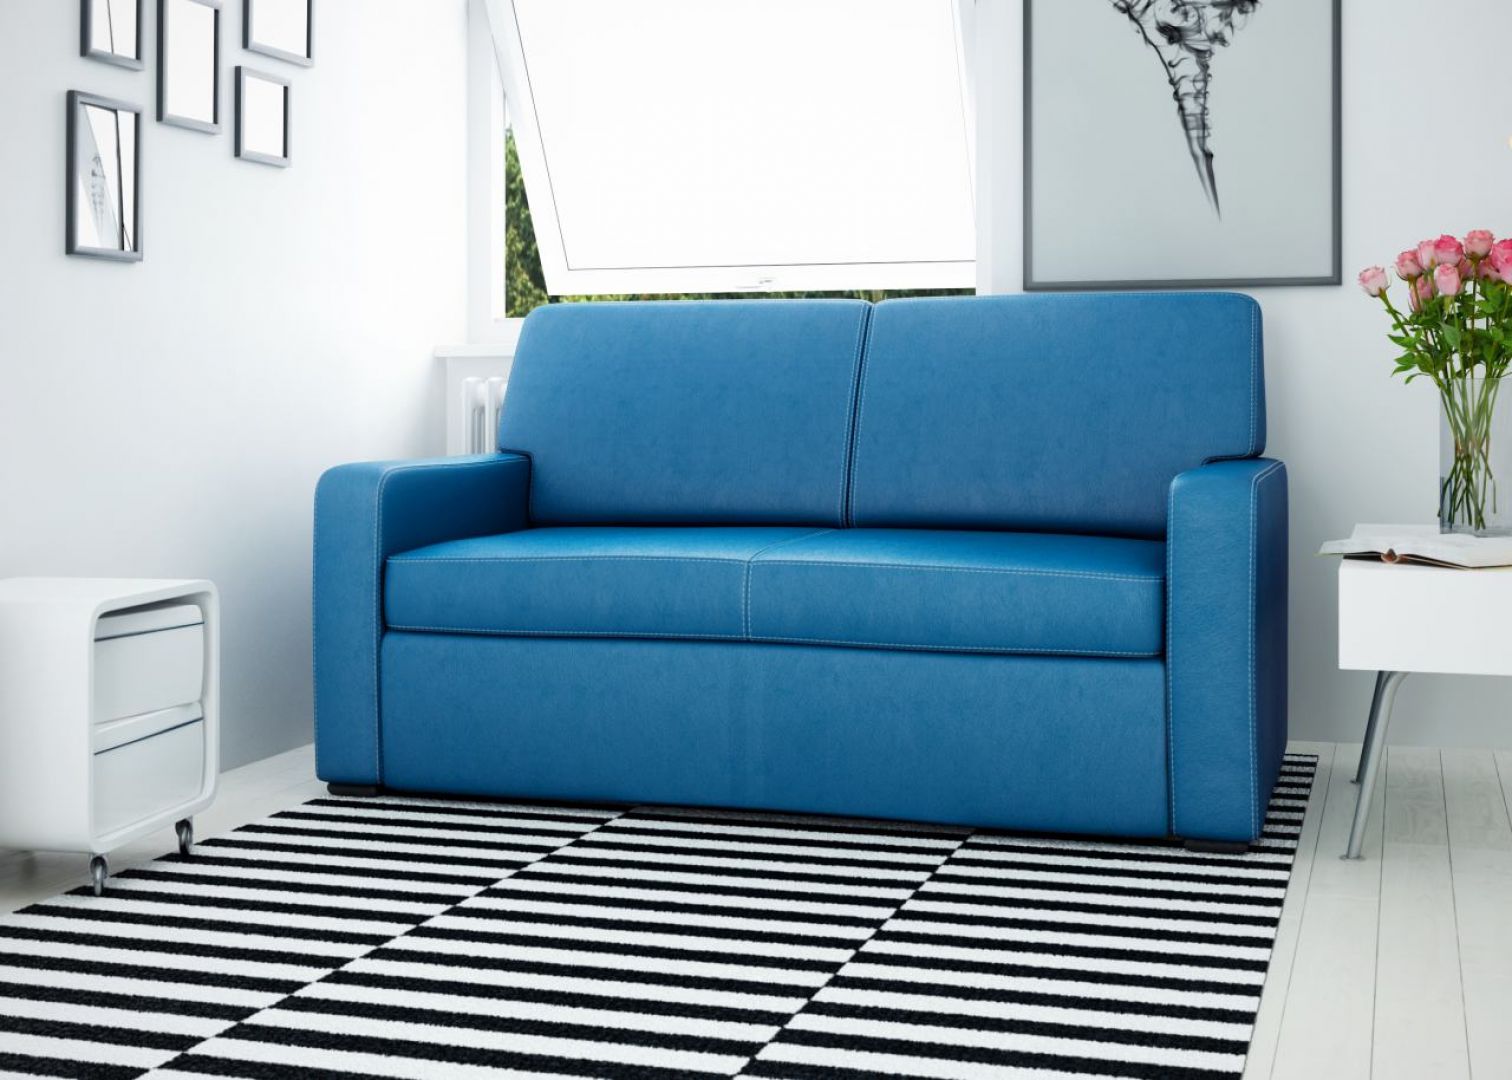 Sofa Monty to mebel kompaktowy idealny do małych pomieszczeń. Posiada funkcję spania i pojemnik na pościel. Fot. Fresh